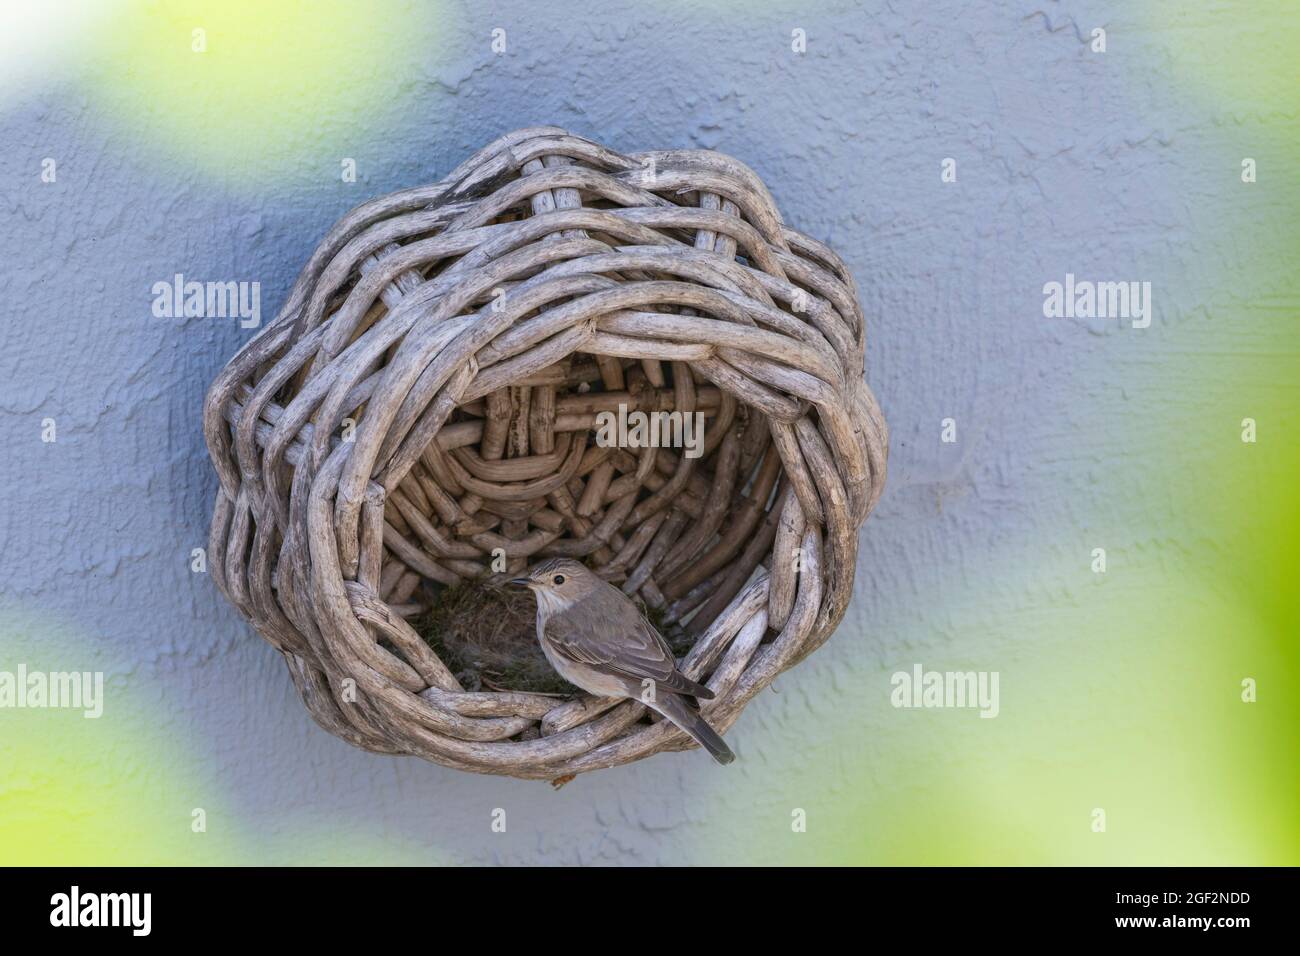 mouscikapa striata (Mouscicapa striata), dans un nid avec de jeunes oiseaux dans un ancien panier de la maison, Allemagne Banque D'Images